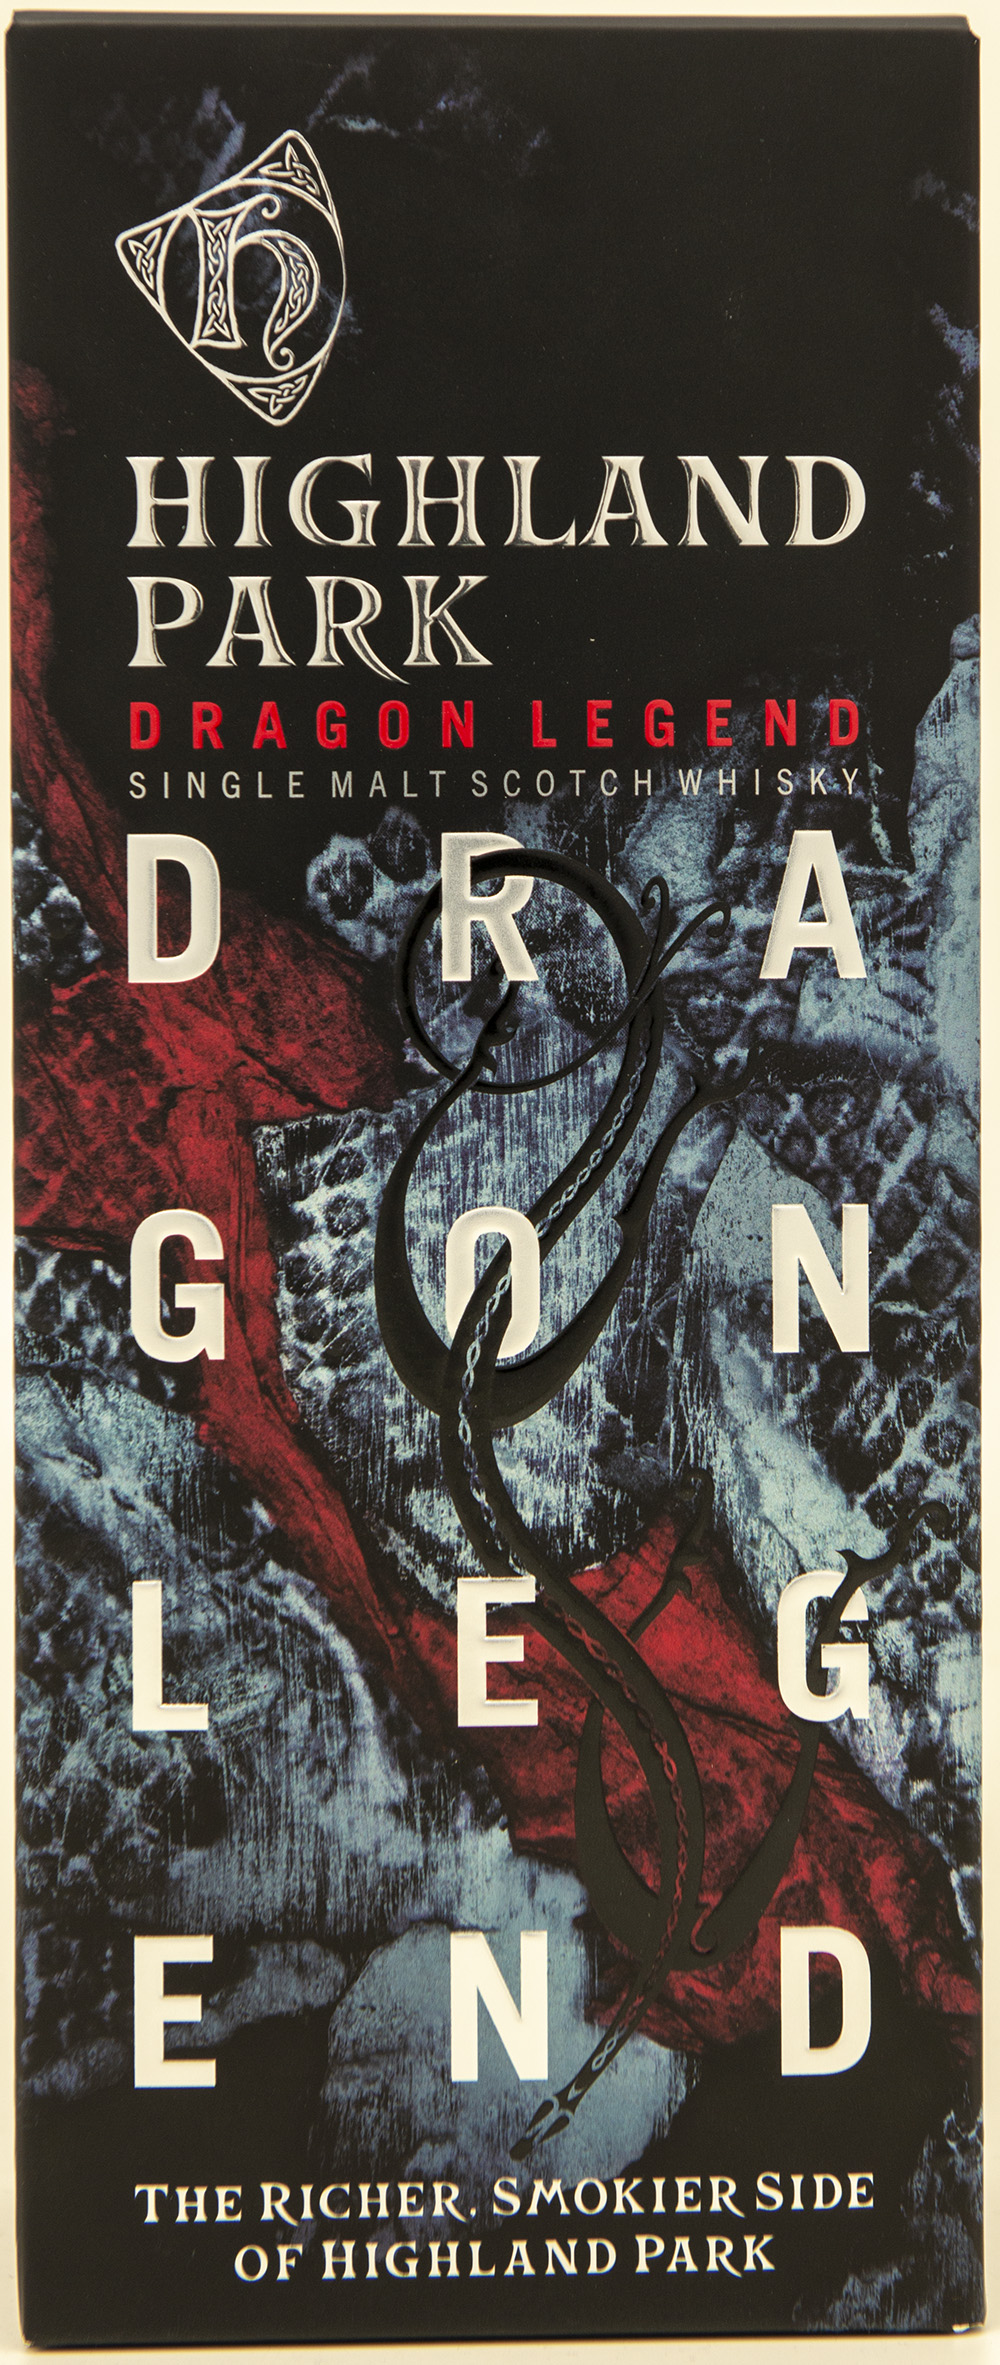 Billede: DSC_4502 - Highland Park Dragon Legend - box front.jpg